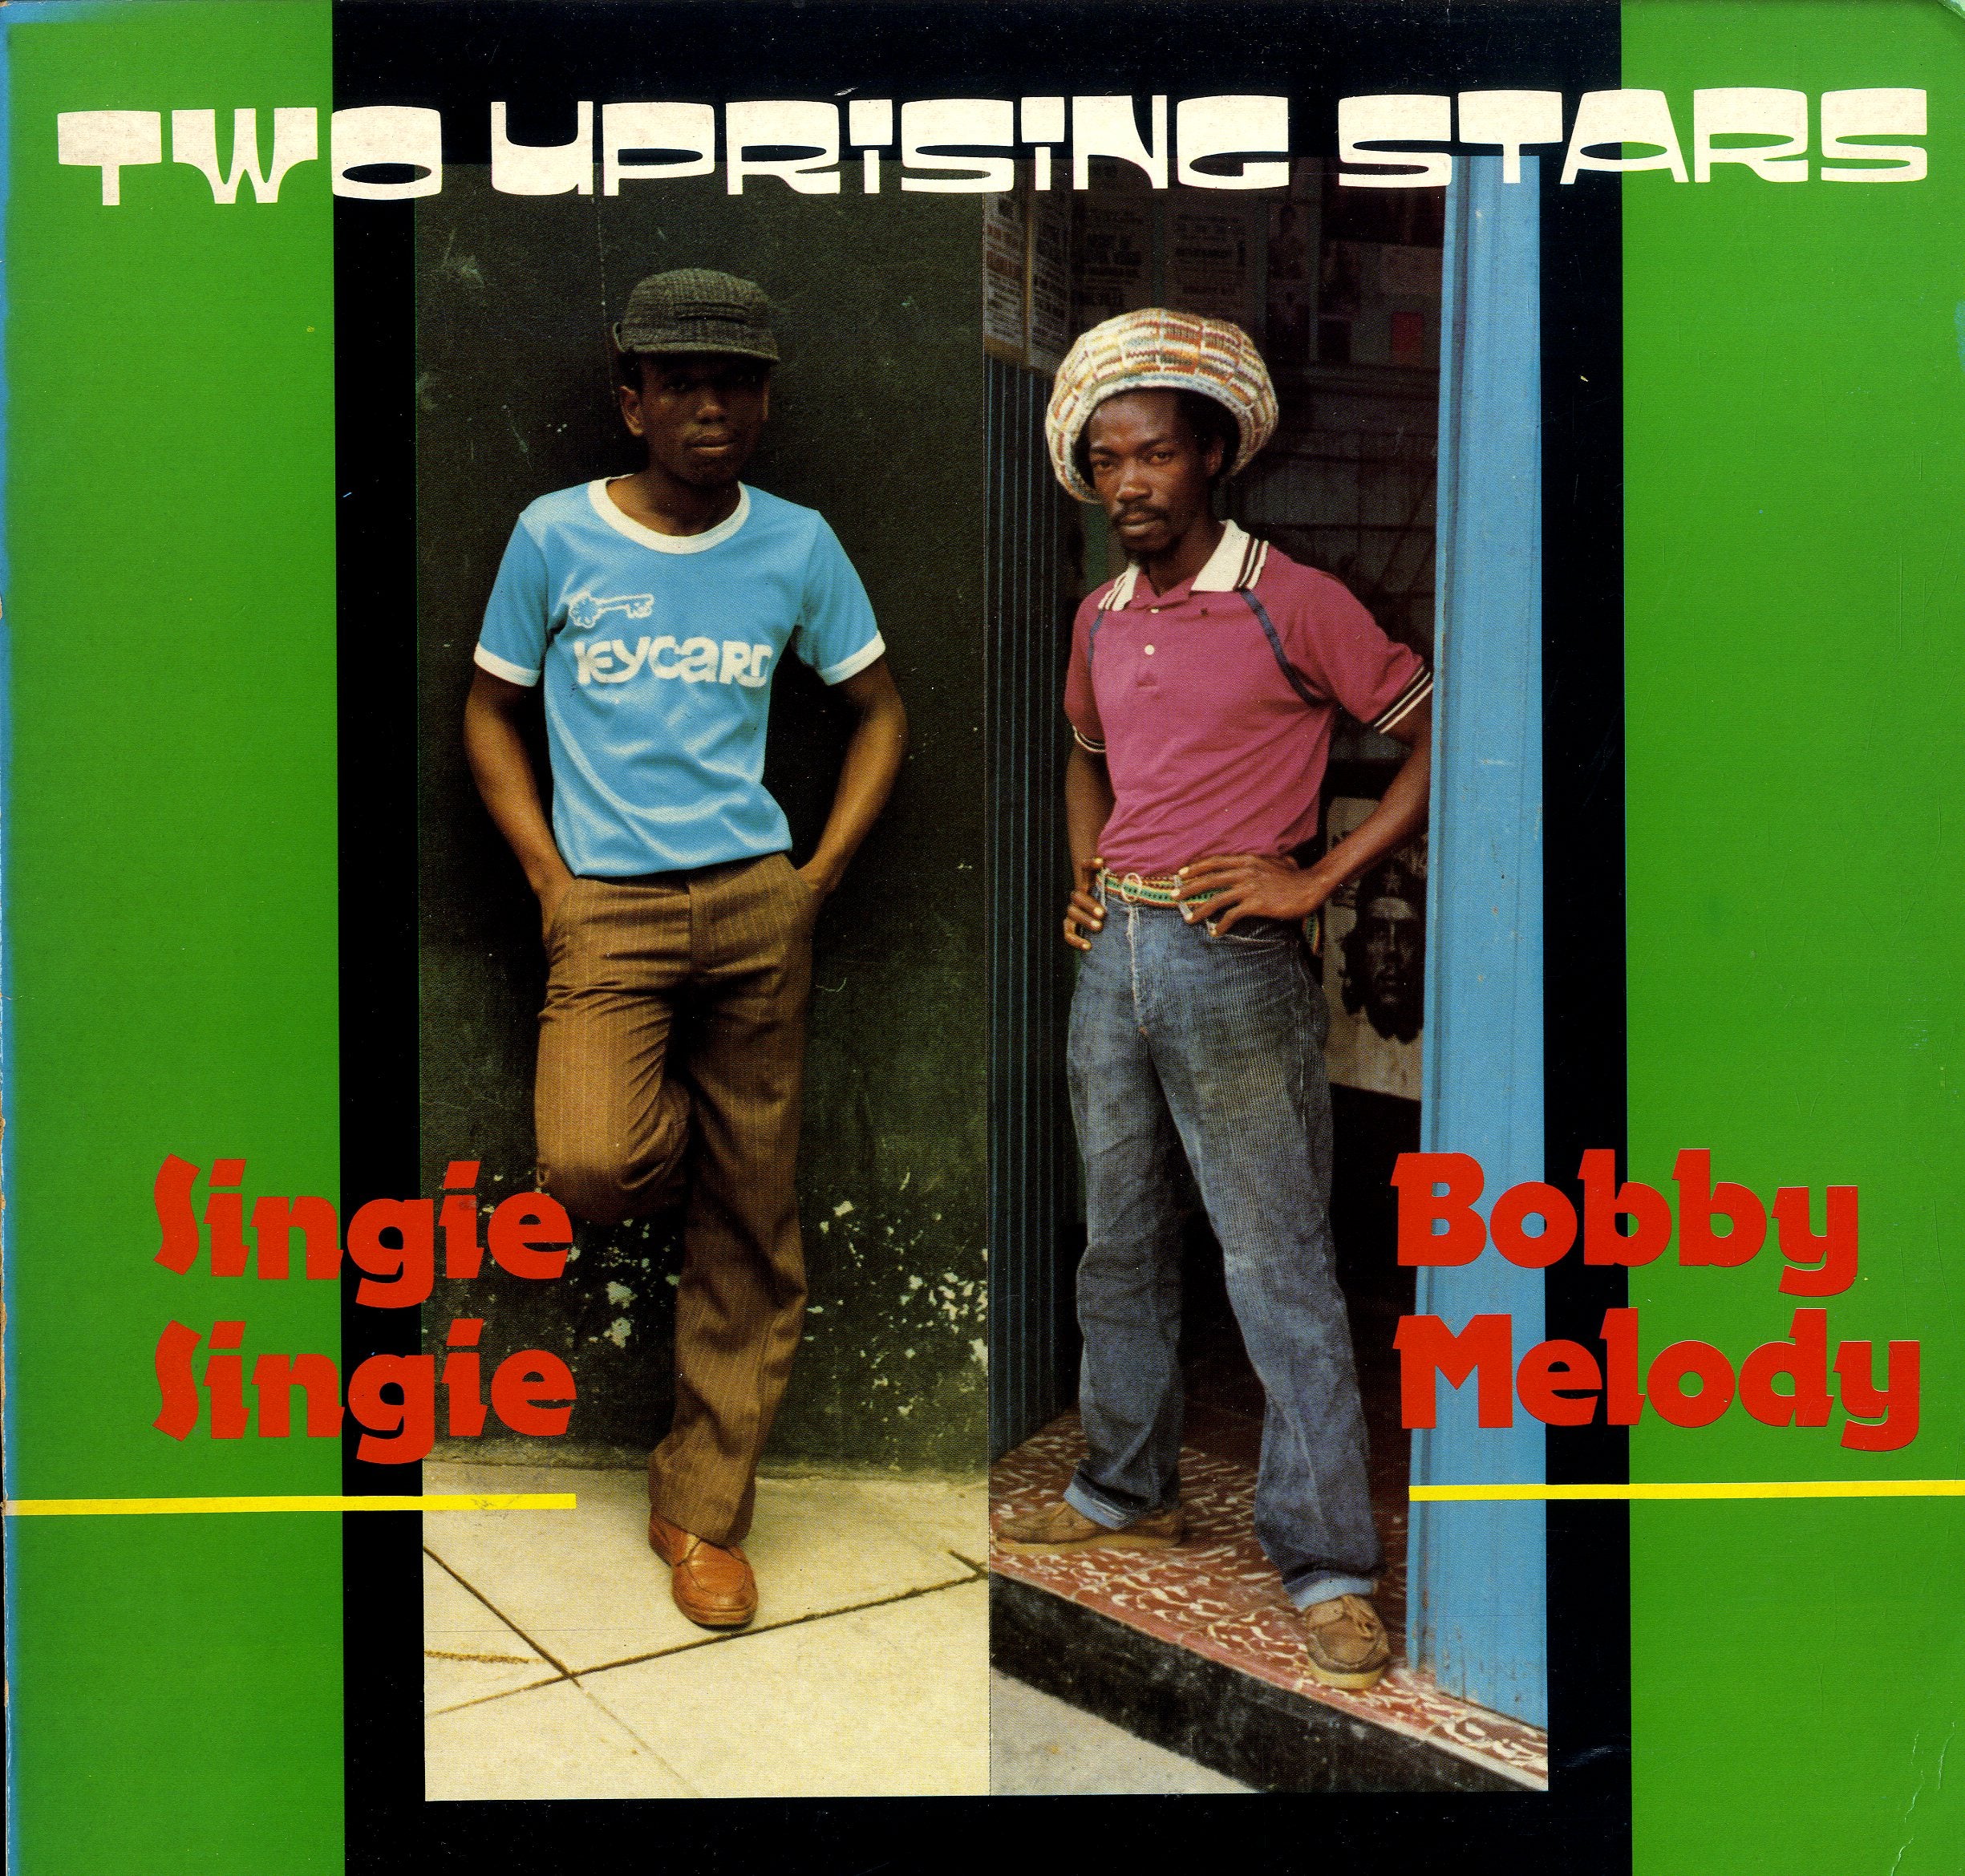 BOBBY MELODY / SINGIE SINGIE [Two Uprising Stars]